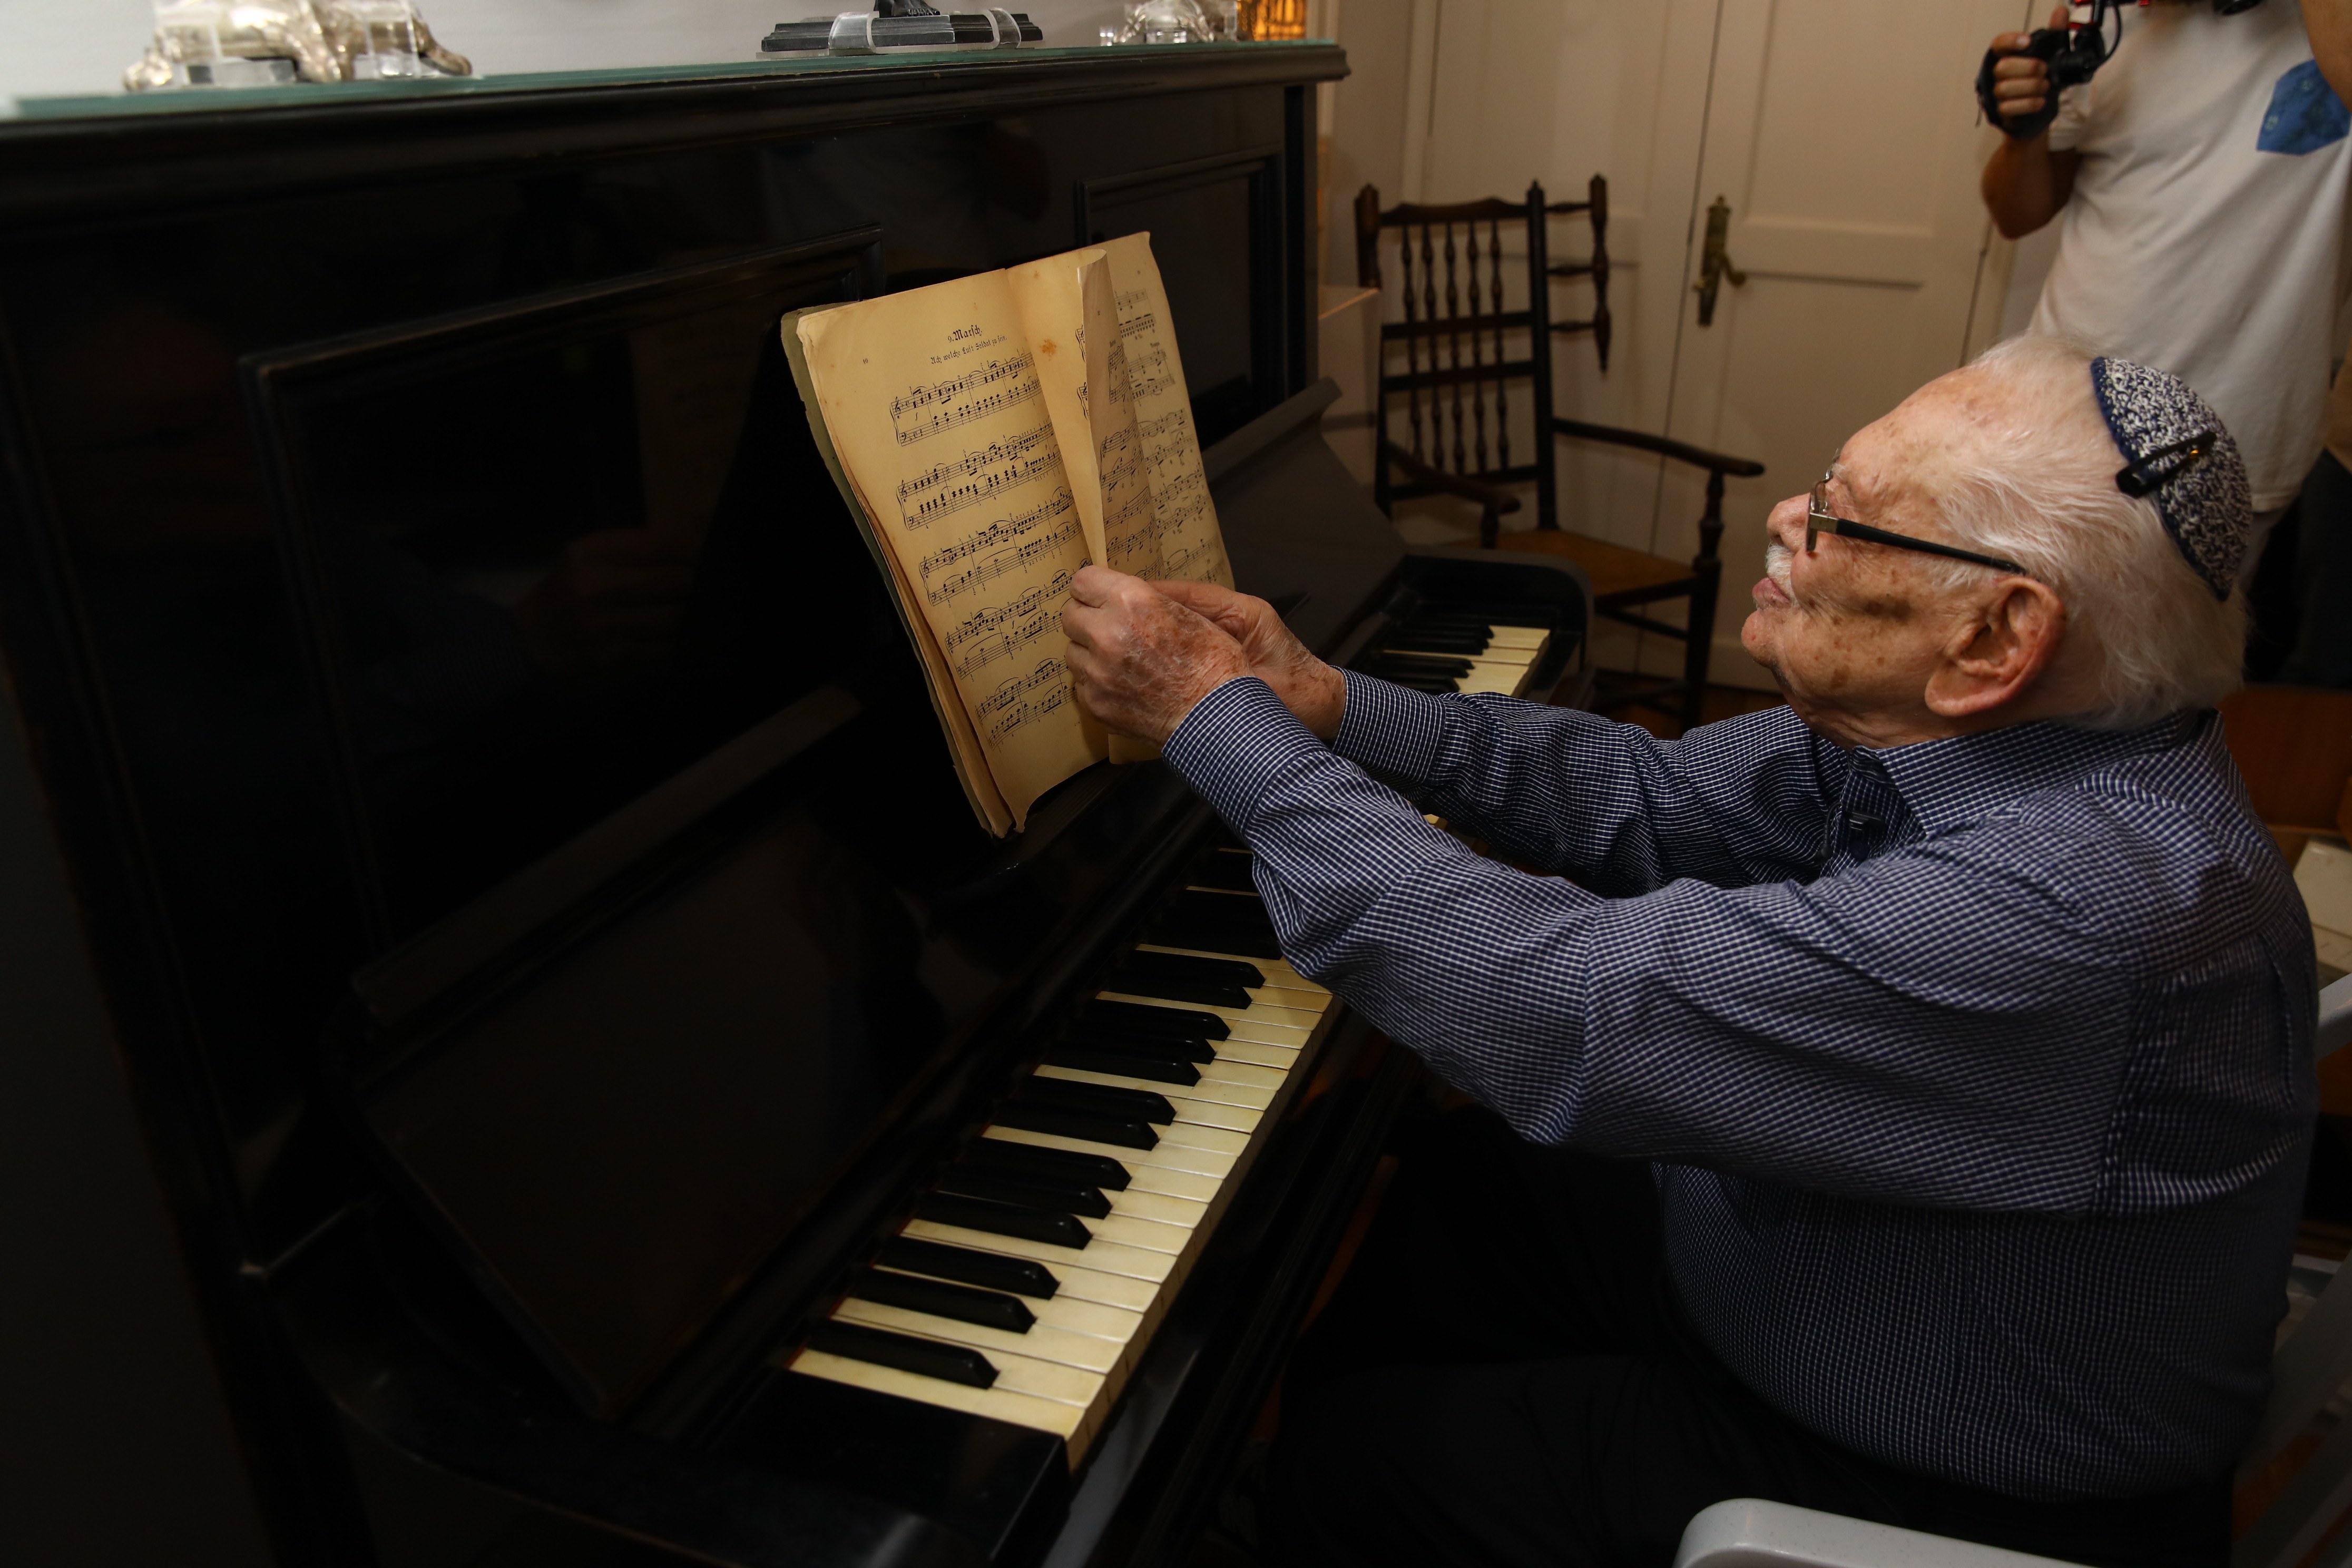 Ein Klavier aus einer zerstörten Welt: Wie die Familie Margulies aus Nazideutschland floh